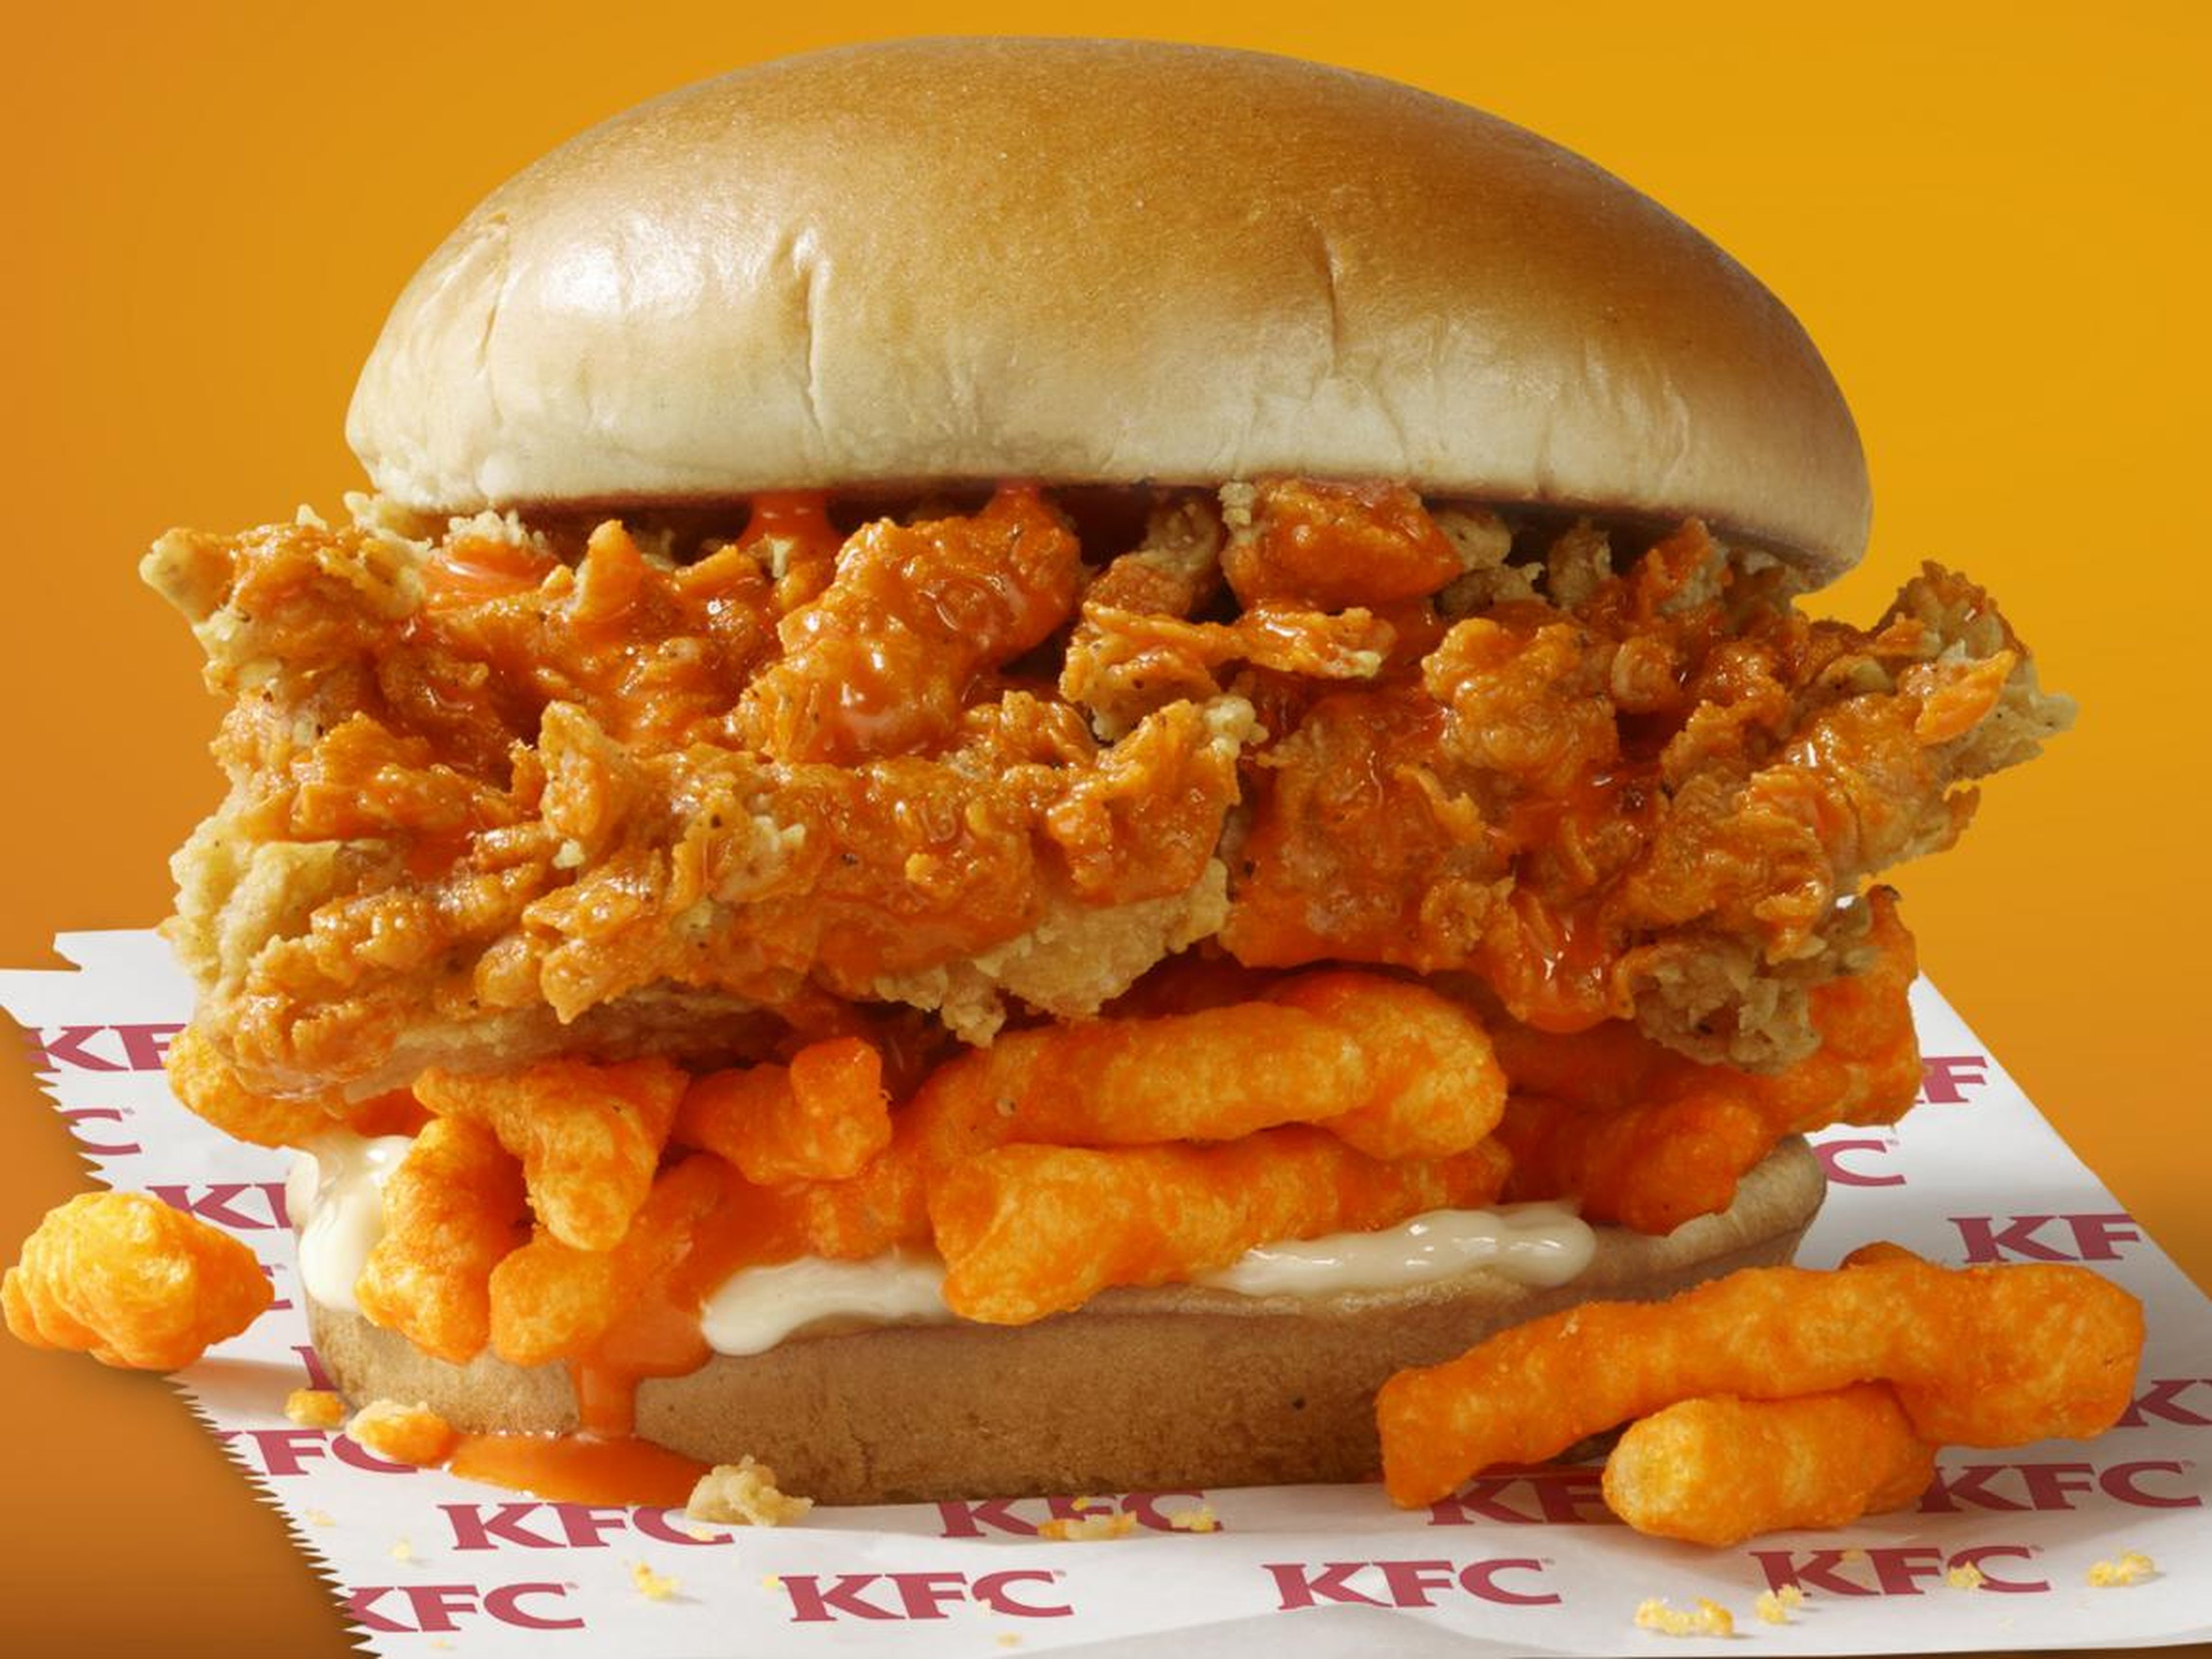 KFC está preparando un sándwich de pollo frito con Cheetos en todos los rincones de Estados Unidos.